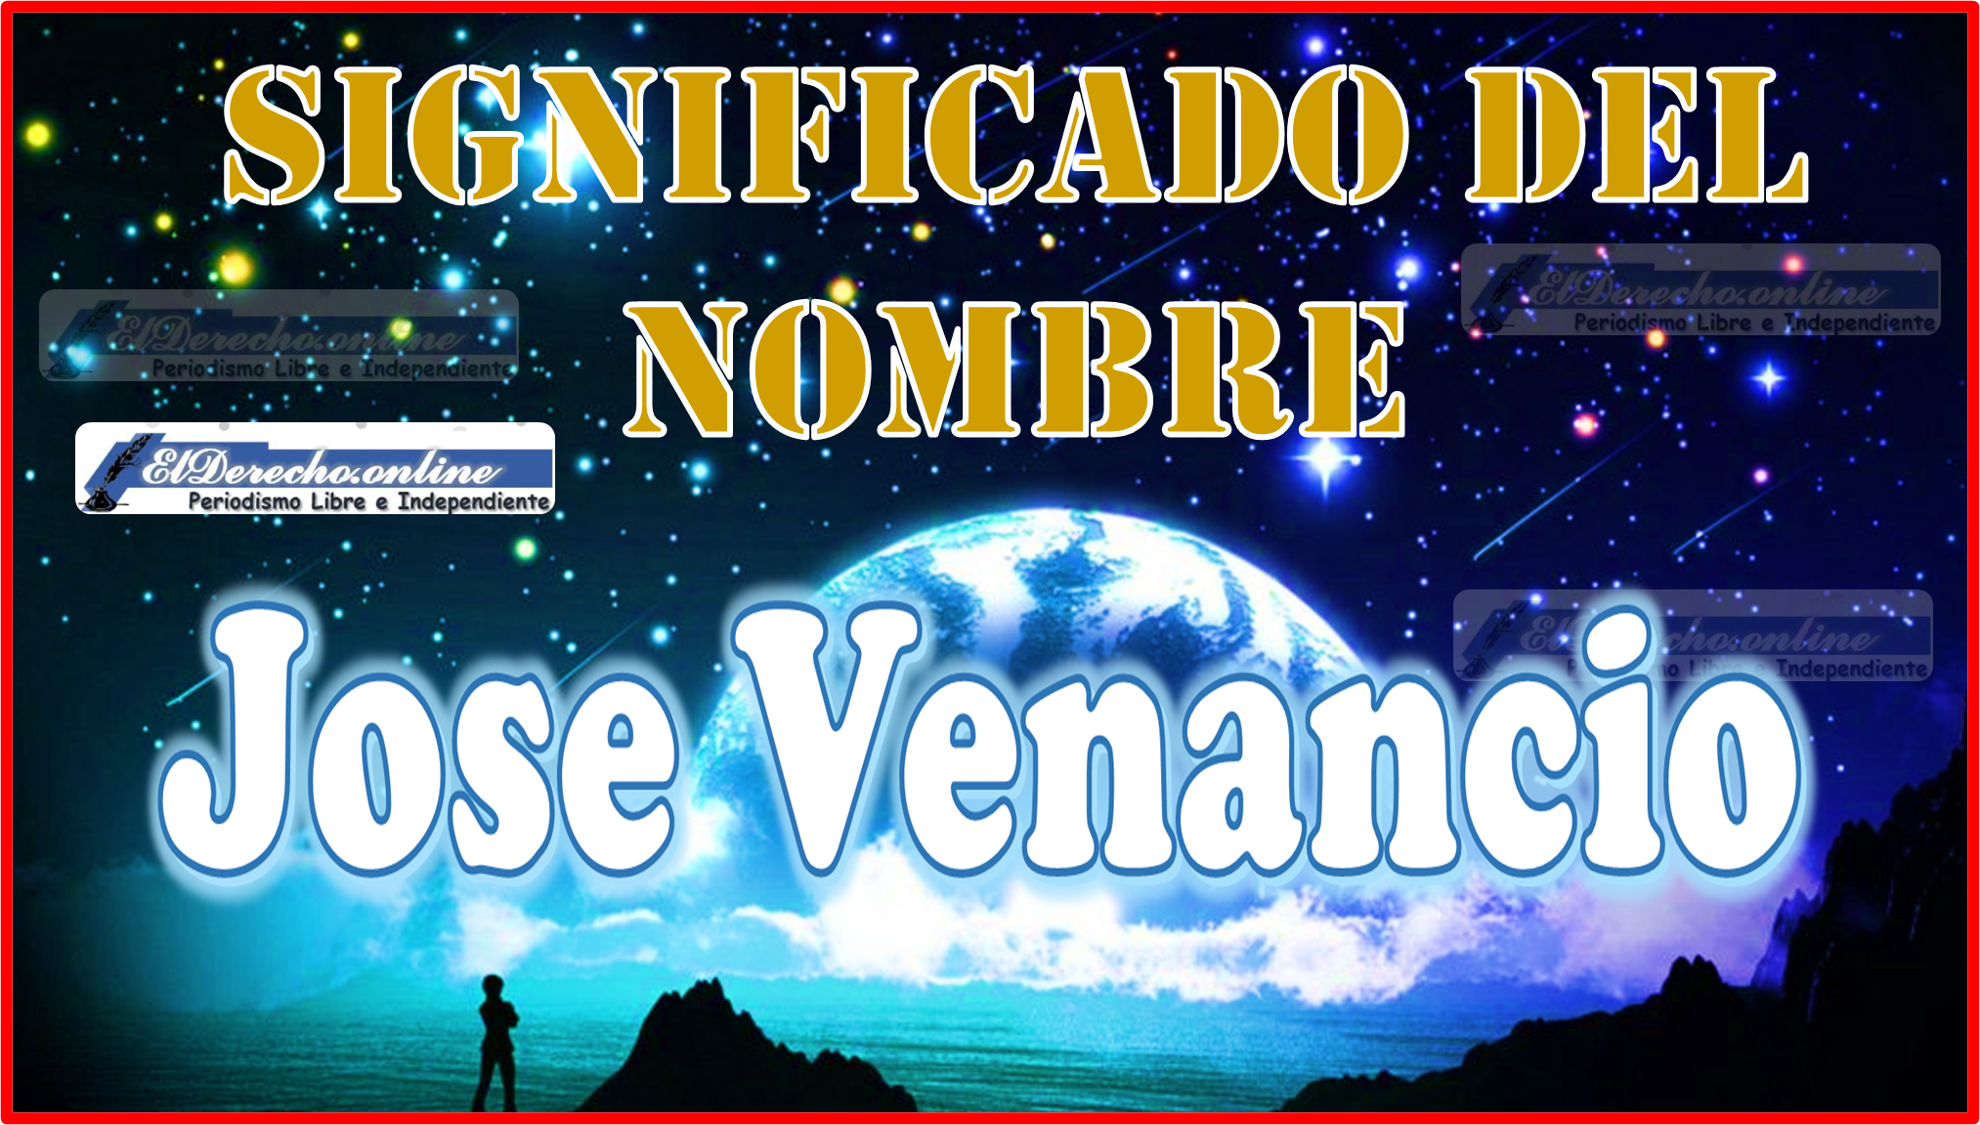 Significado del nombre Jose Venancio, su origen y más